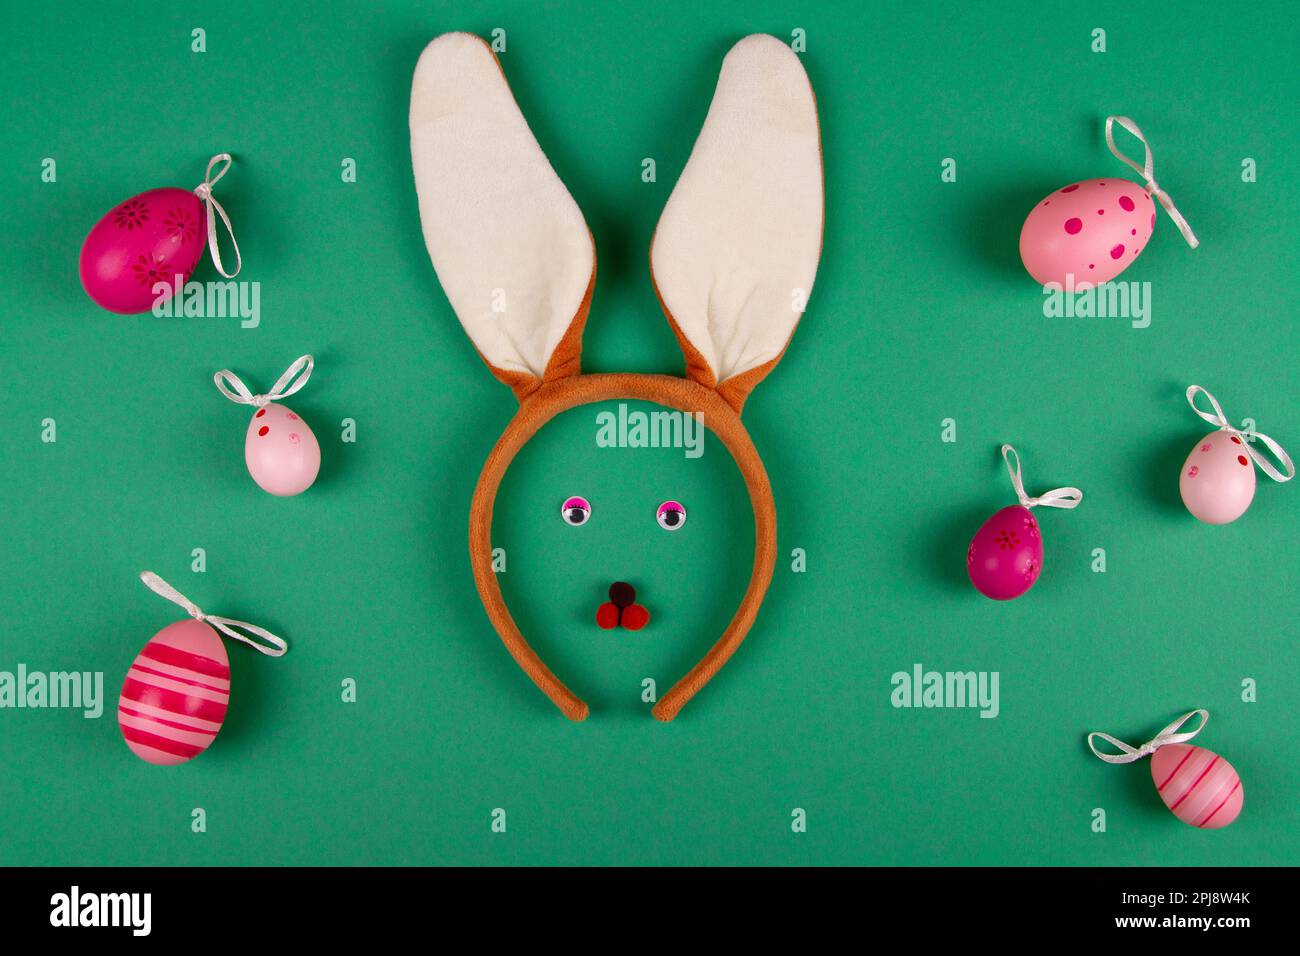 Décor vert humoristique sur le thème de Pâques orné d'œufs roses et d'un petit lapin Banque D'Images